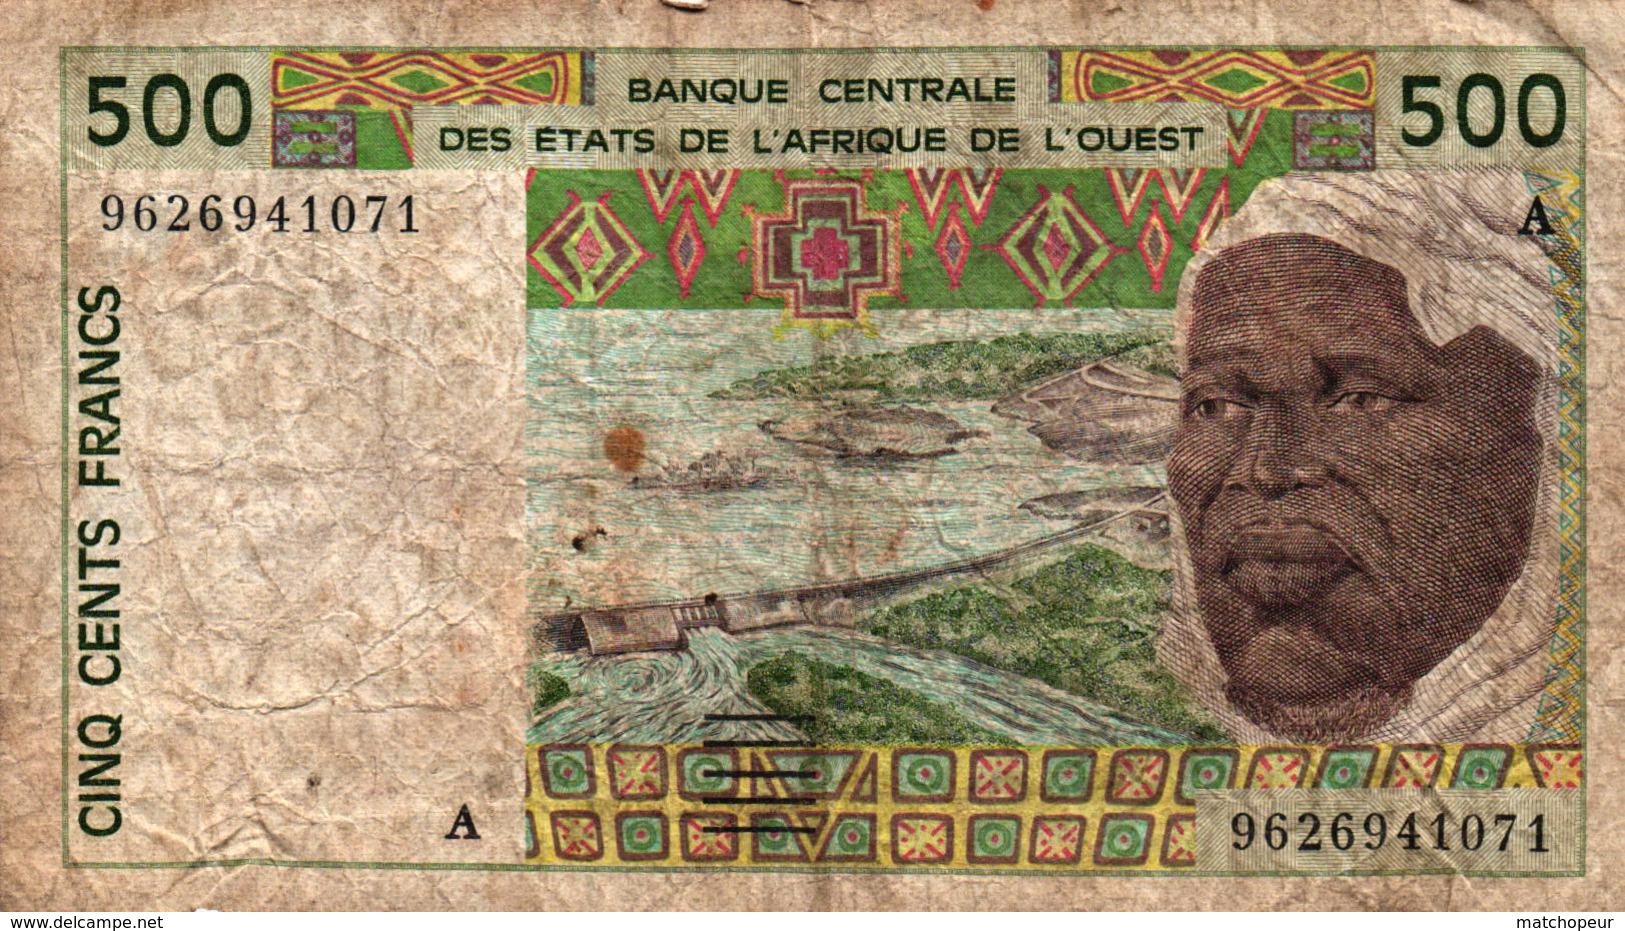 BILLET DE 500 FRANCS CFA - BCEAO - AFRIQUE DE L'OUEST - Autres - Afrique